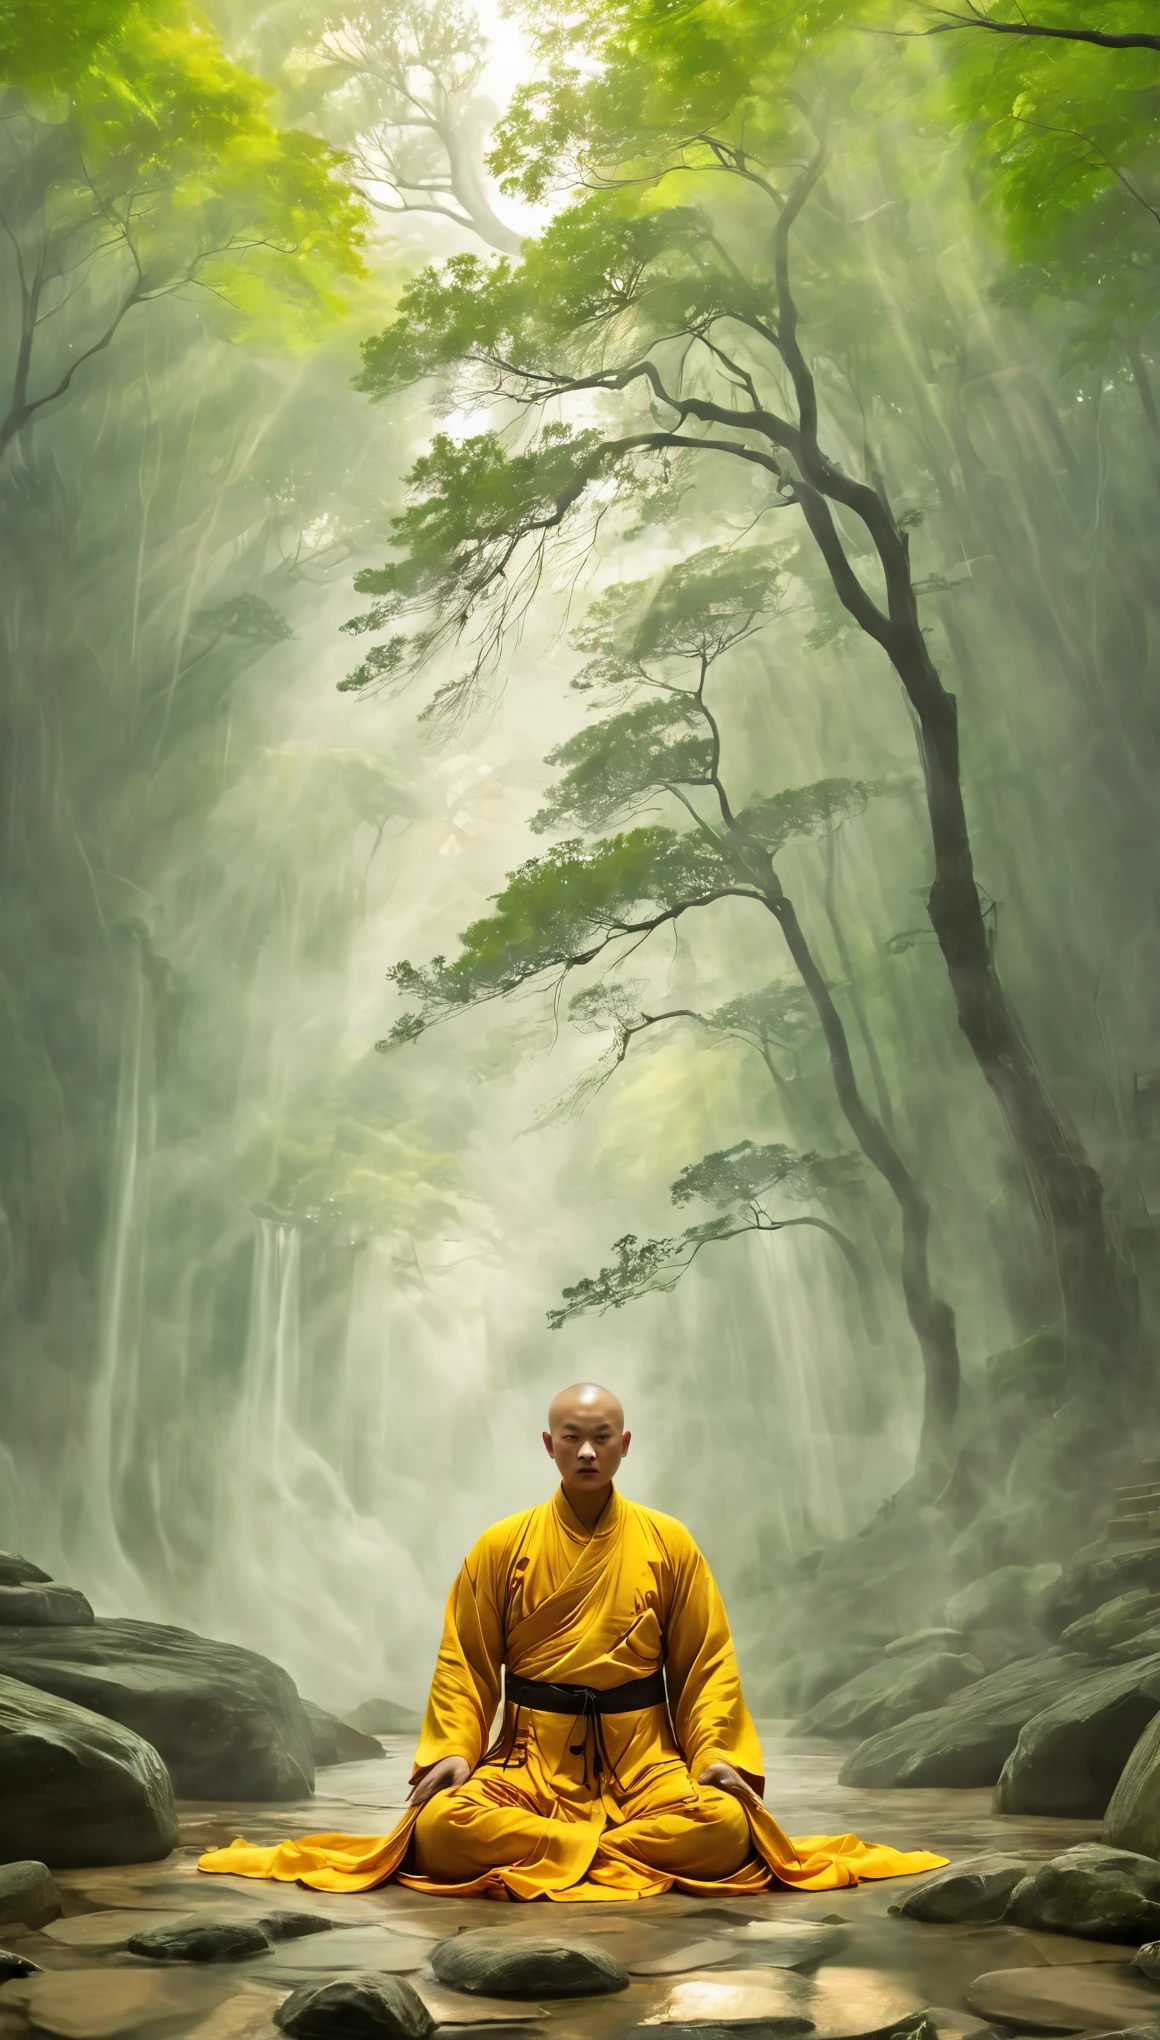 Um monge Shaolin atuando,
Explosão de Qi, barreira espiritual, energia mística, Fluxos de prana, Yin Equilibrado,
volumetric fog,
Careca, Prado,Xianxia